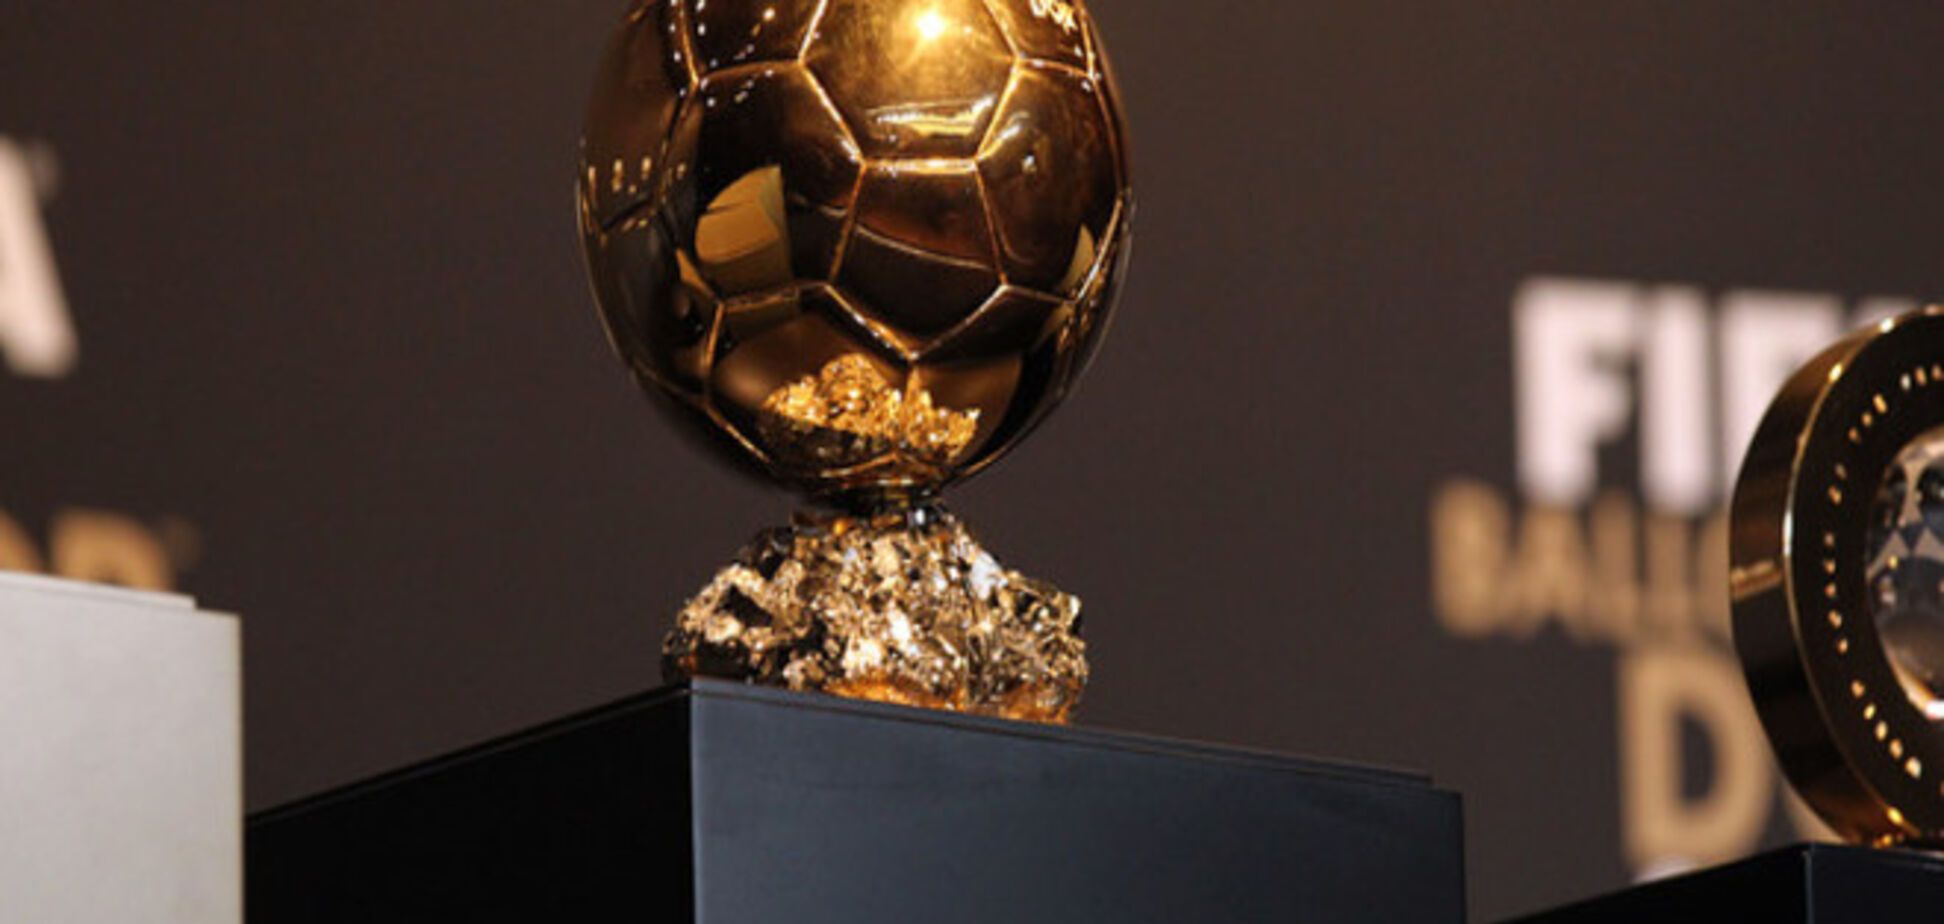 В Португалии шокировали информацией об обладателе Золотого мяча